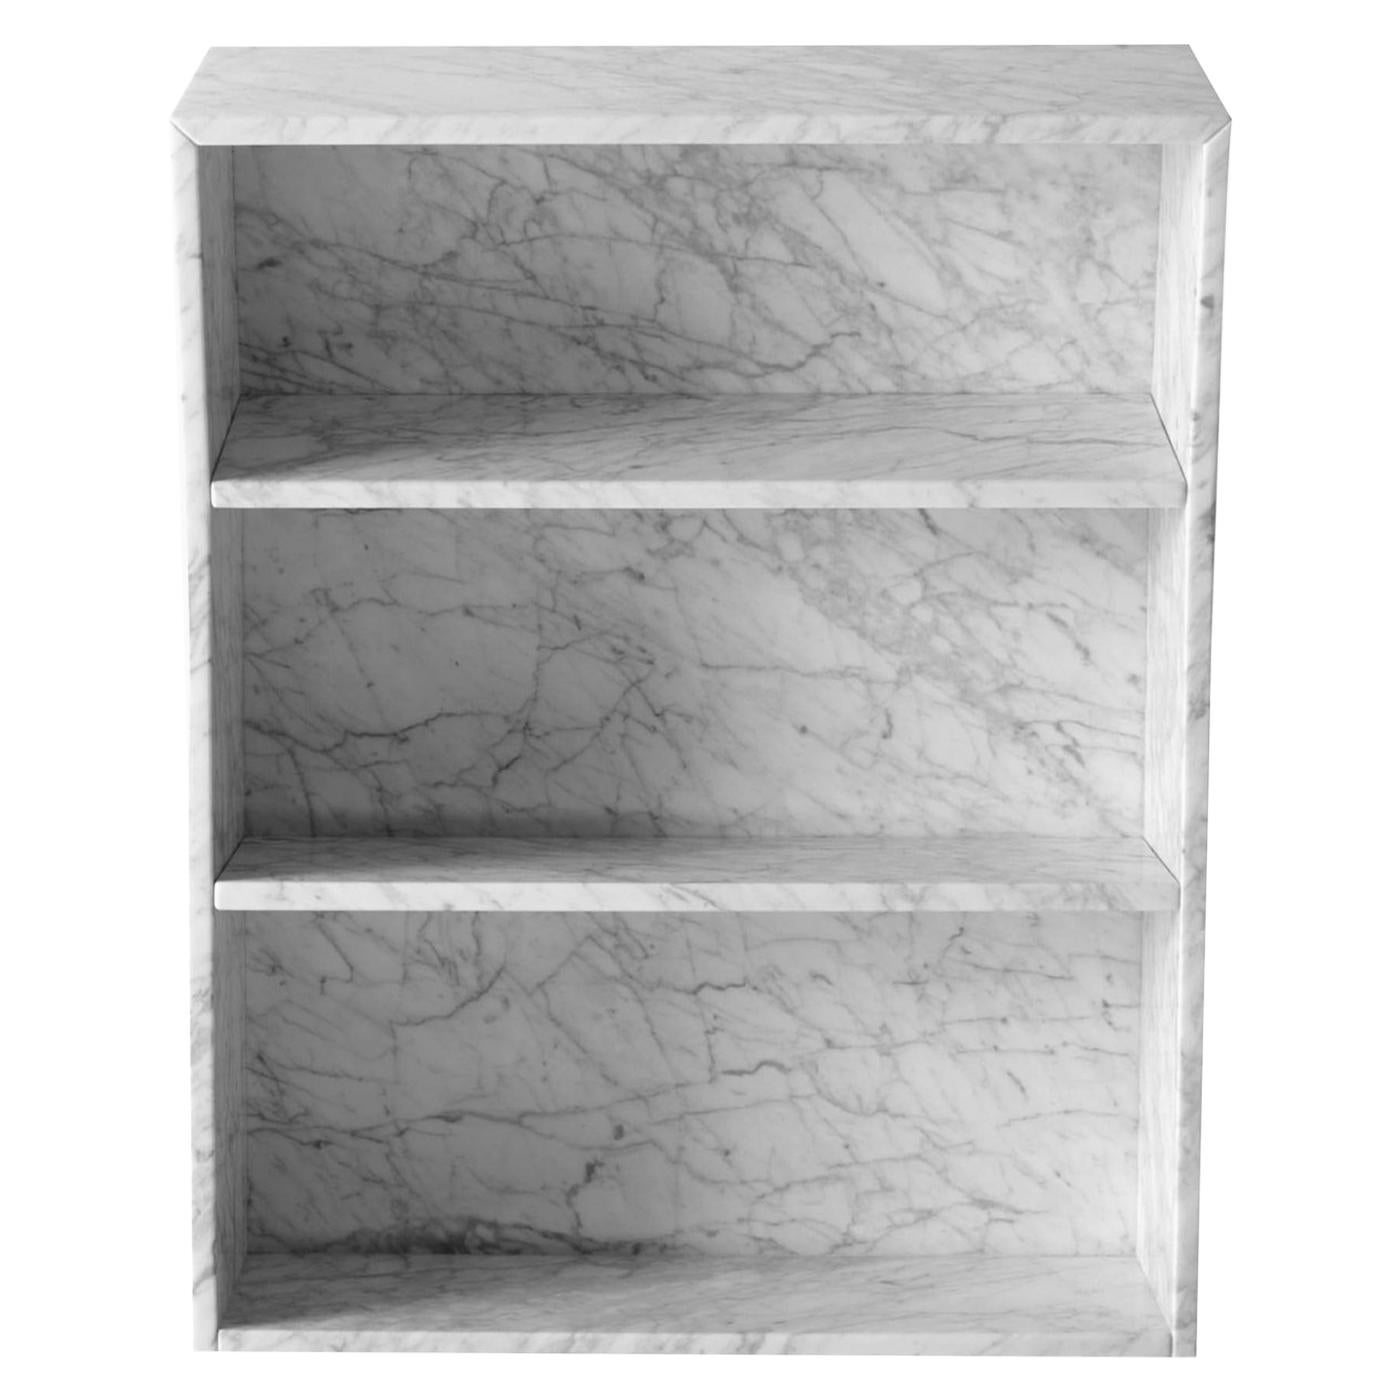 White Melt Book Case, Design Thomas Sandell, 2010